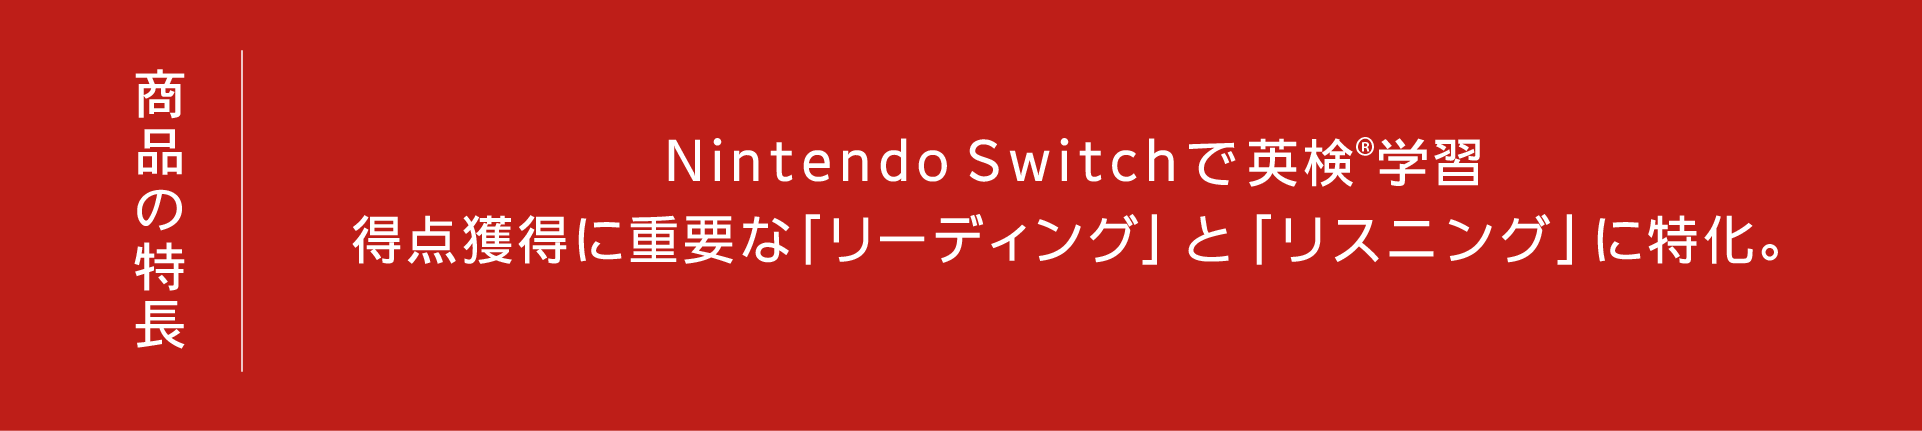 商品の特長 Nintendo Switchで英検®学習 得点獲得に重要な「リーディング」と「リスニング」に特化。